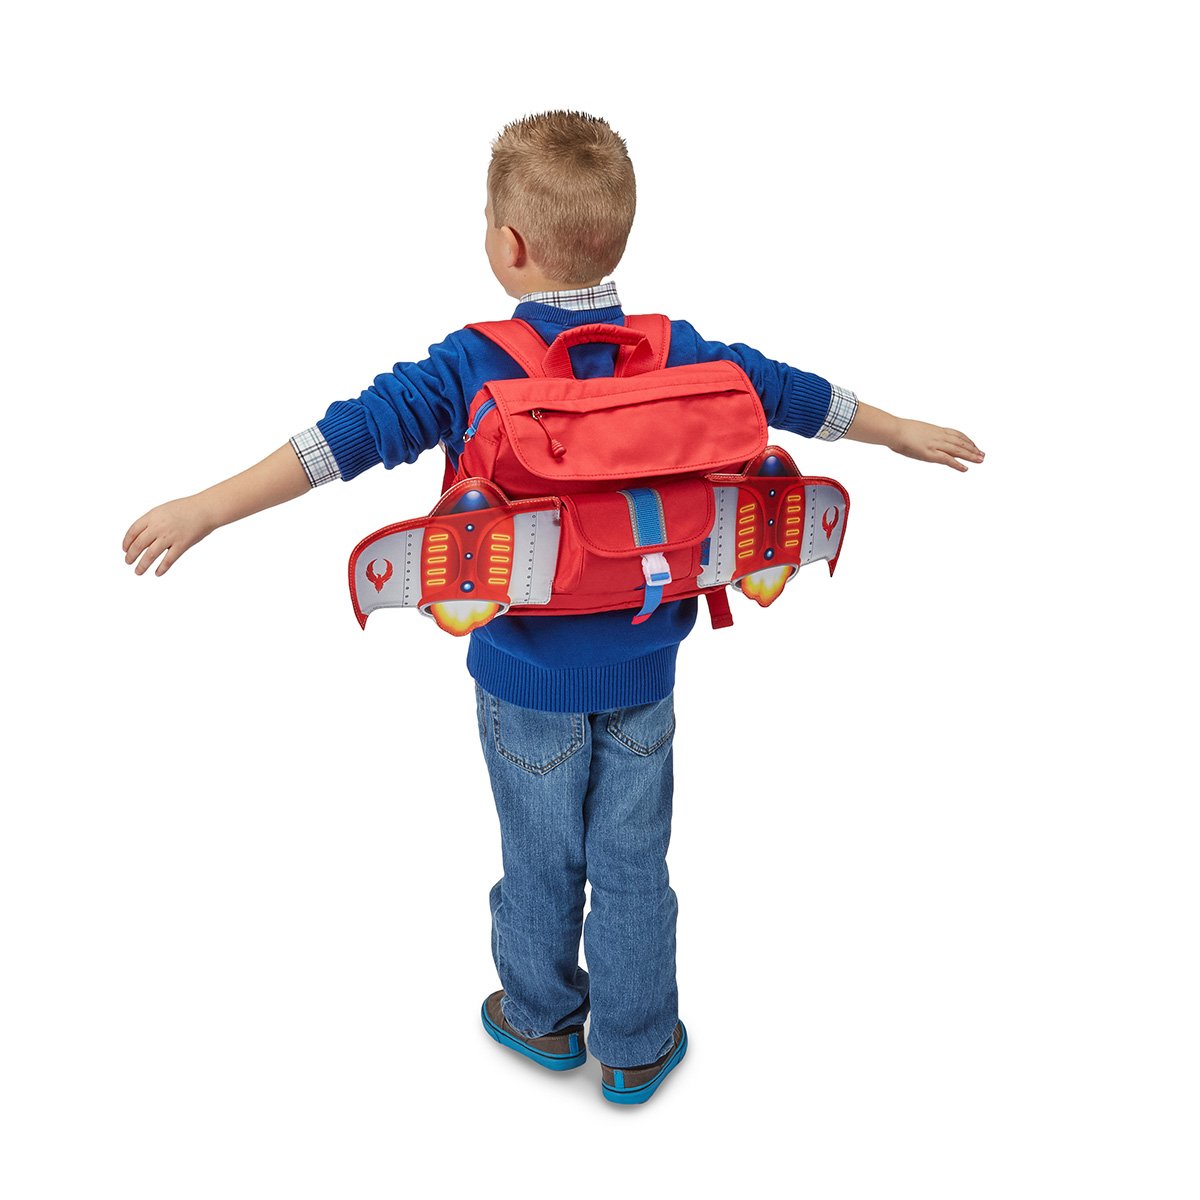 Spaceship Children Backpack – Midori Gifts